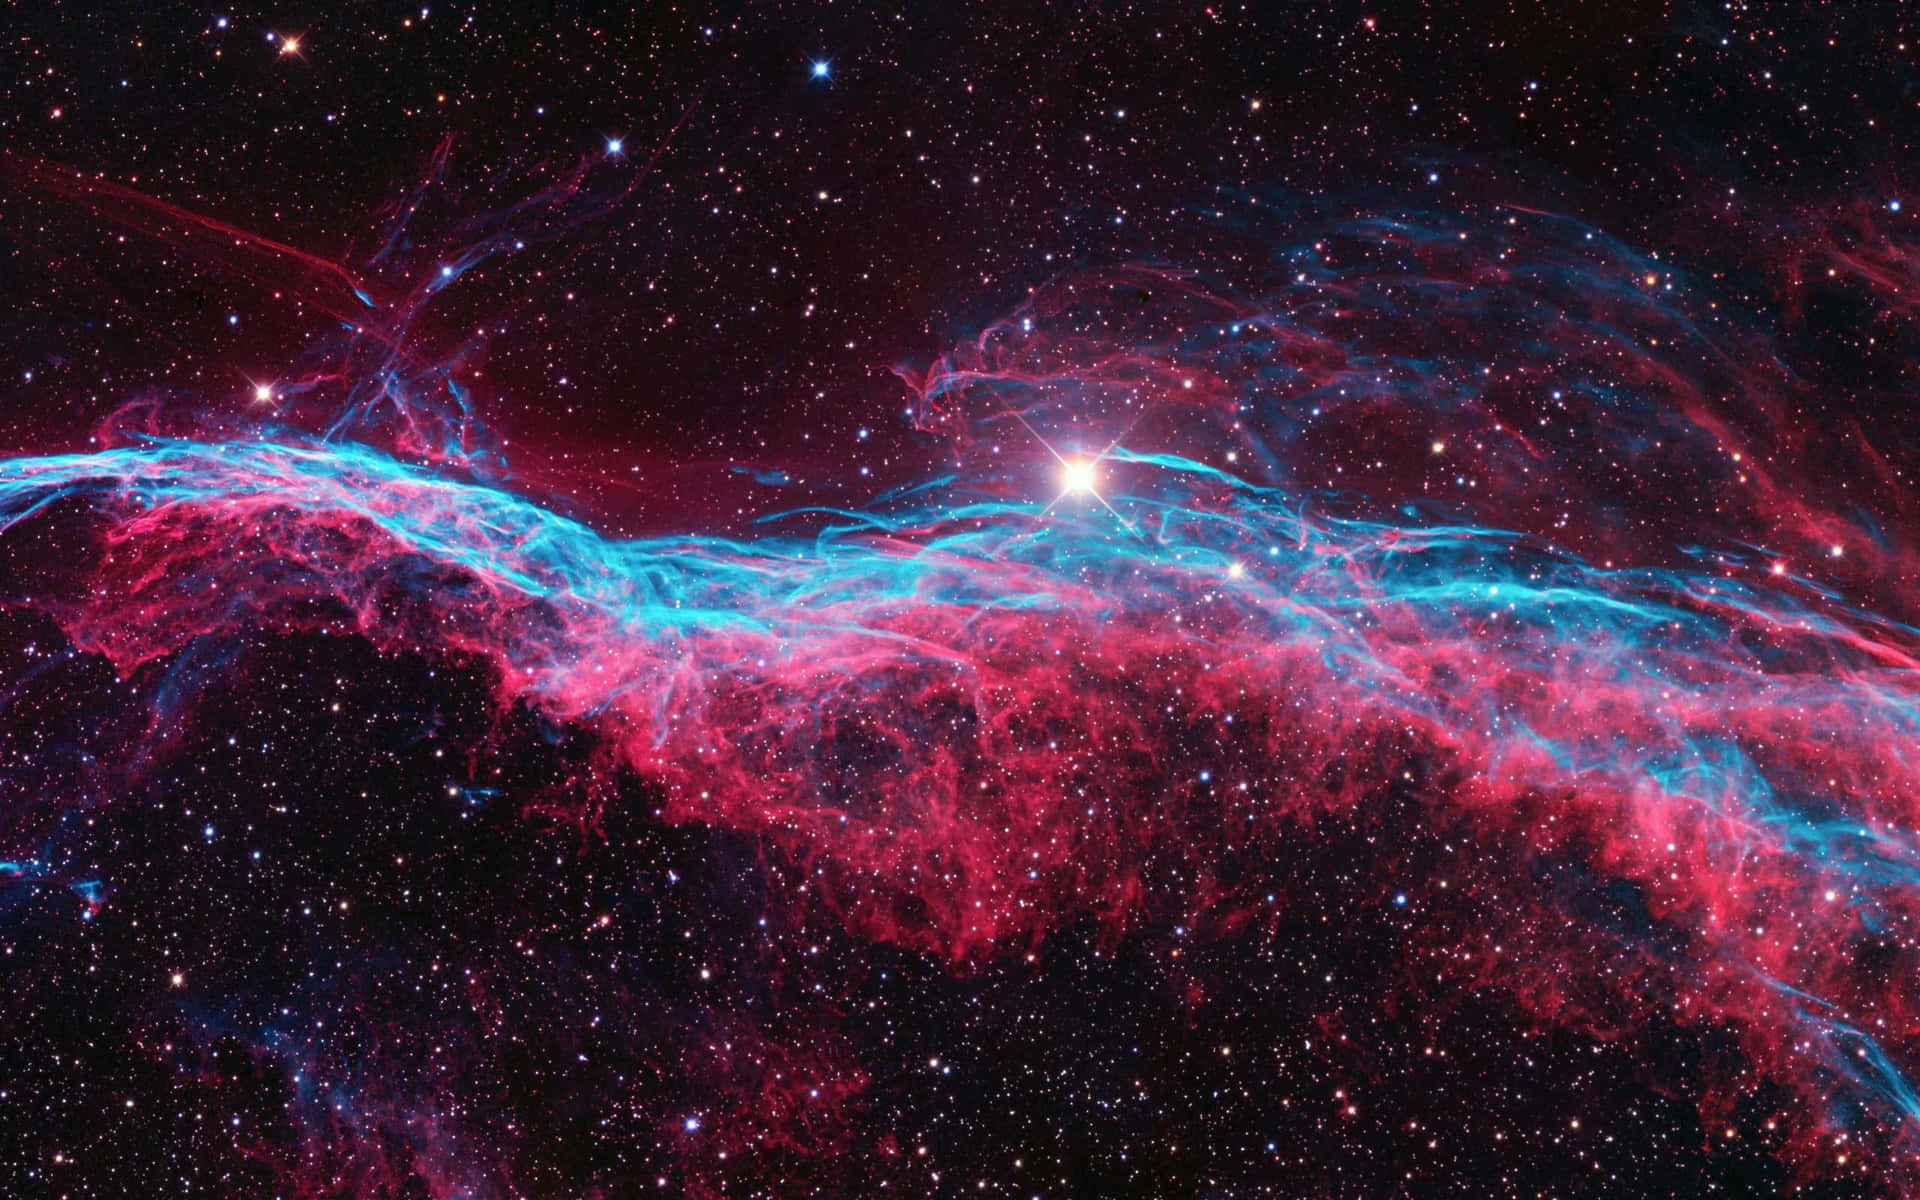 Hintergrundbildder Hohen Auflösung Der Veil Nebula-galaxie